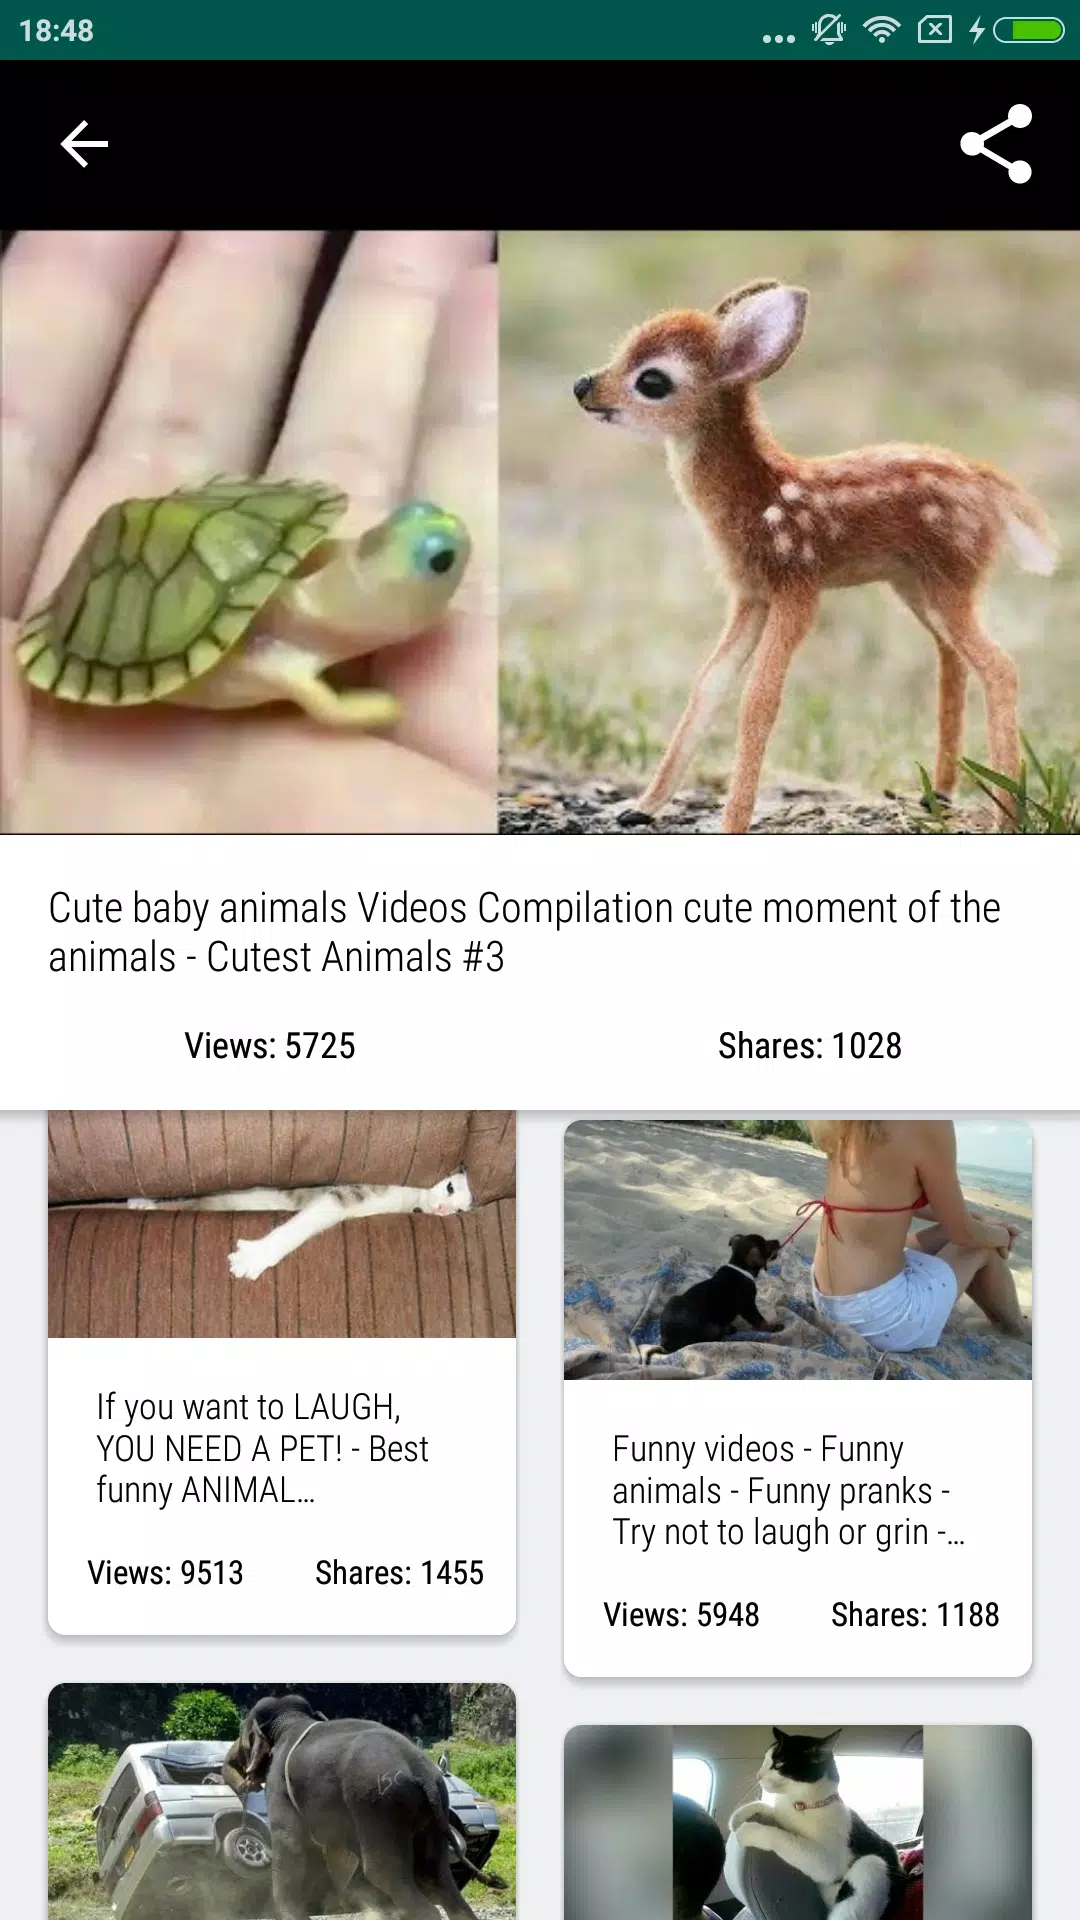 Vídeos de animais engraçados 2020 - Impossível não rir - Videos